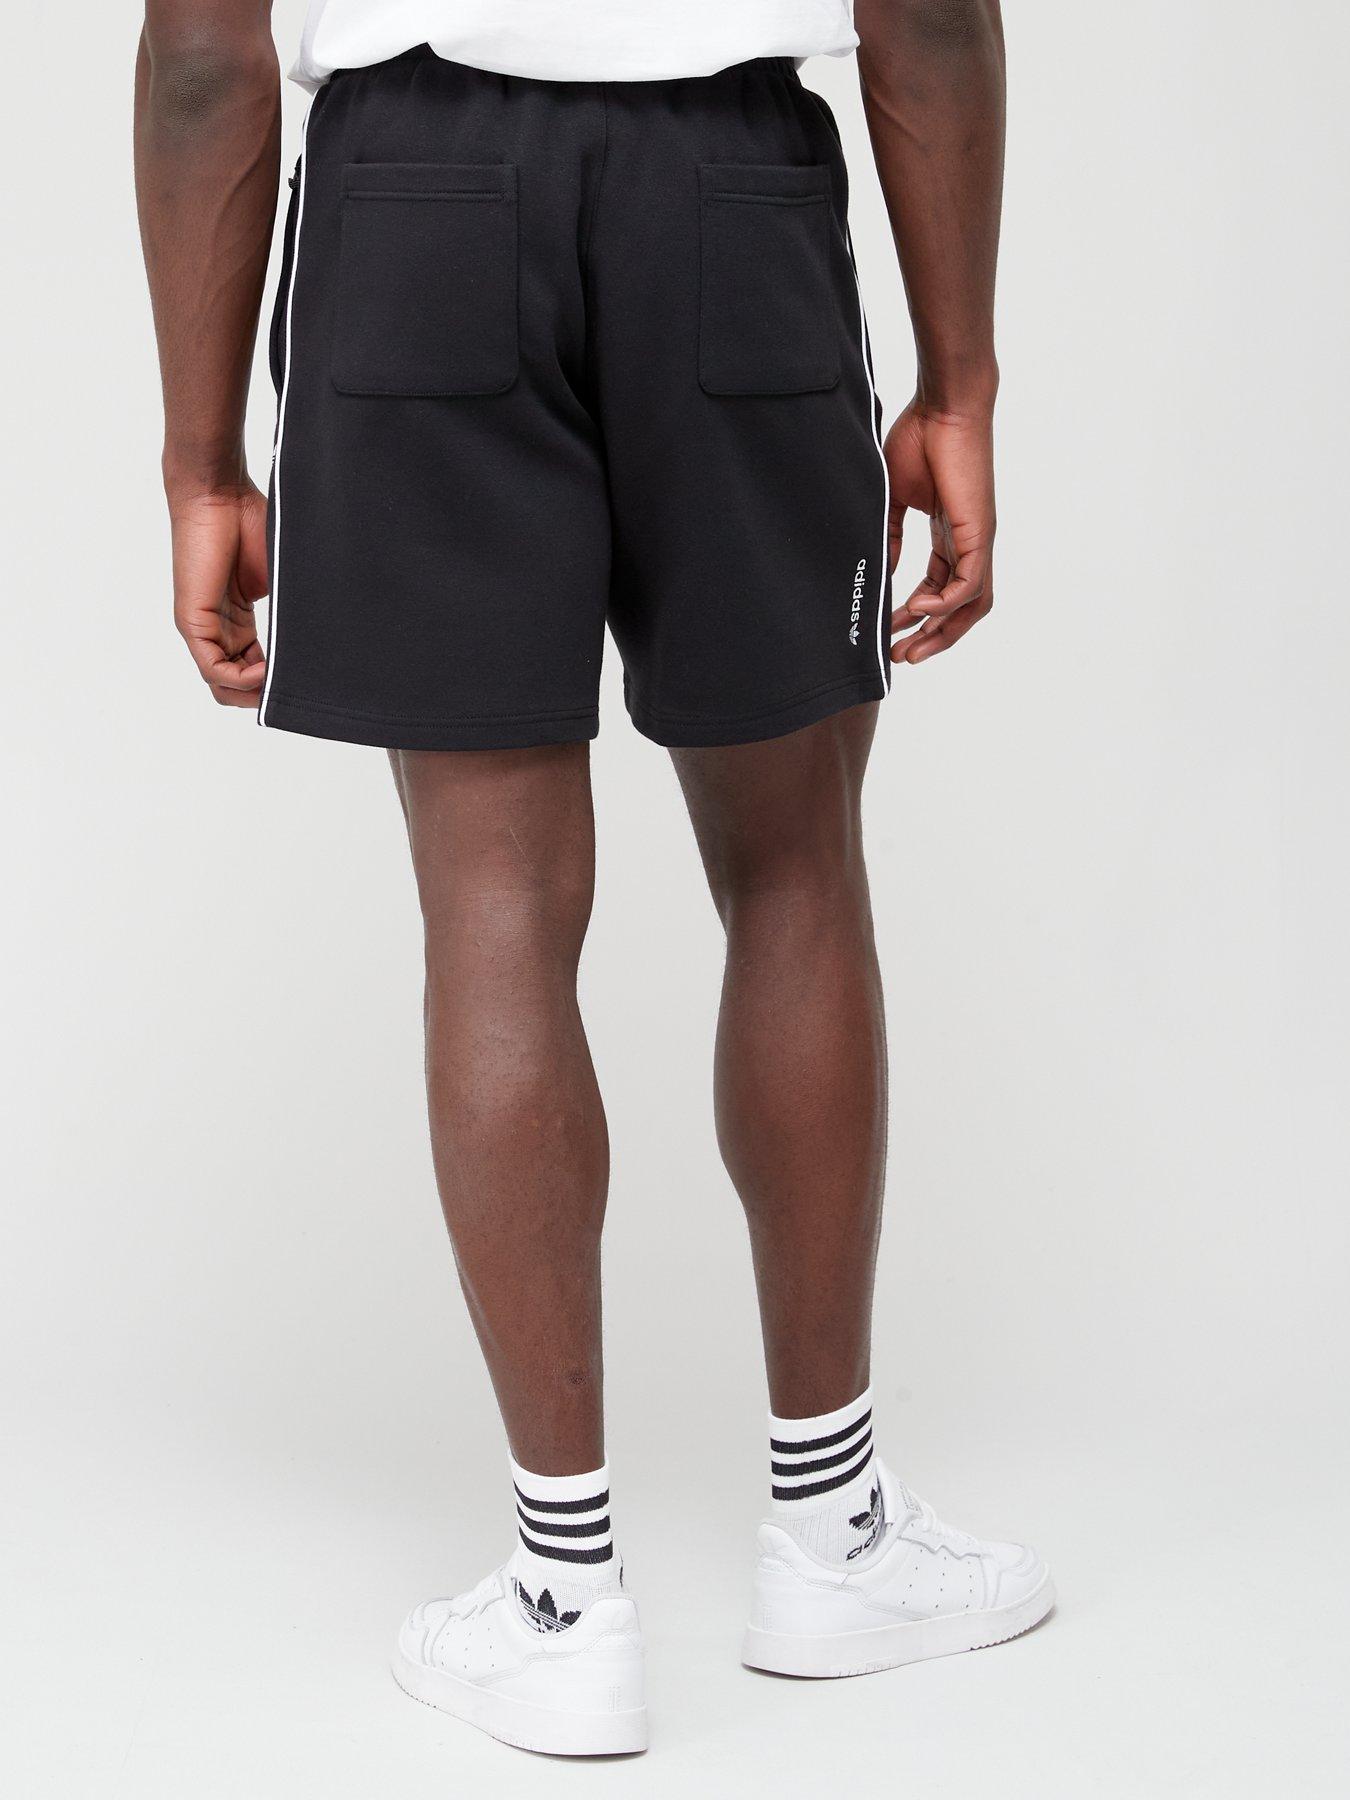 Black Shorts Adicolor Originals - adidas Archive Seasonal